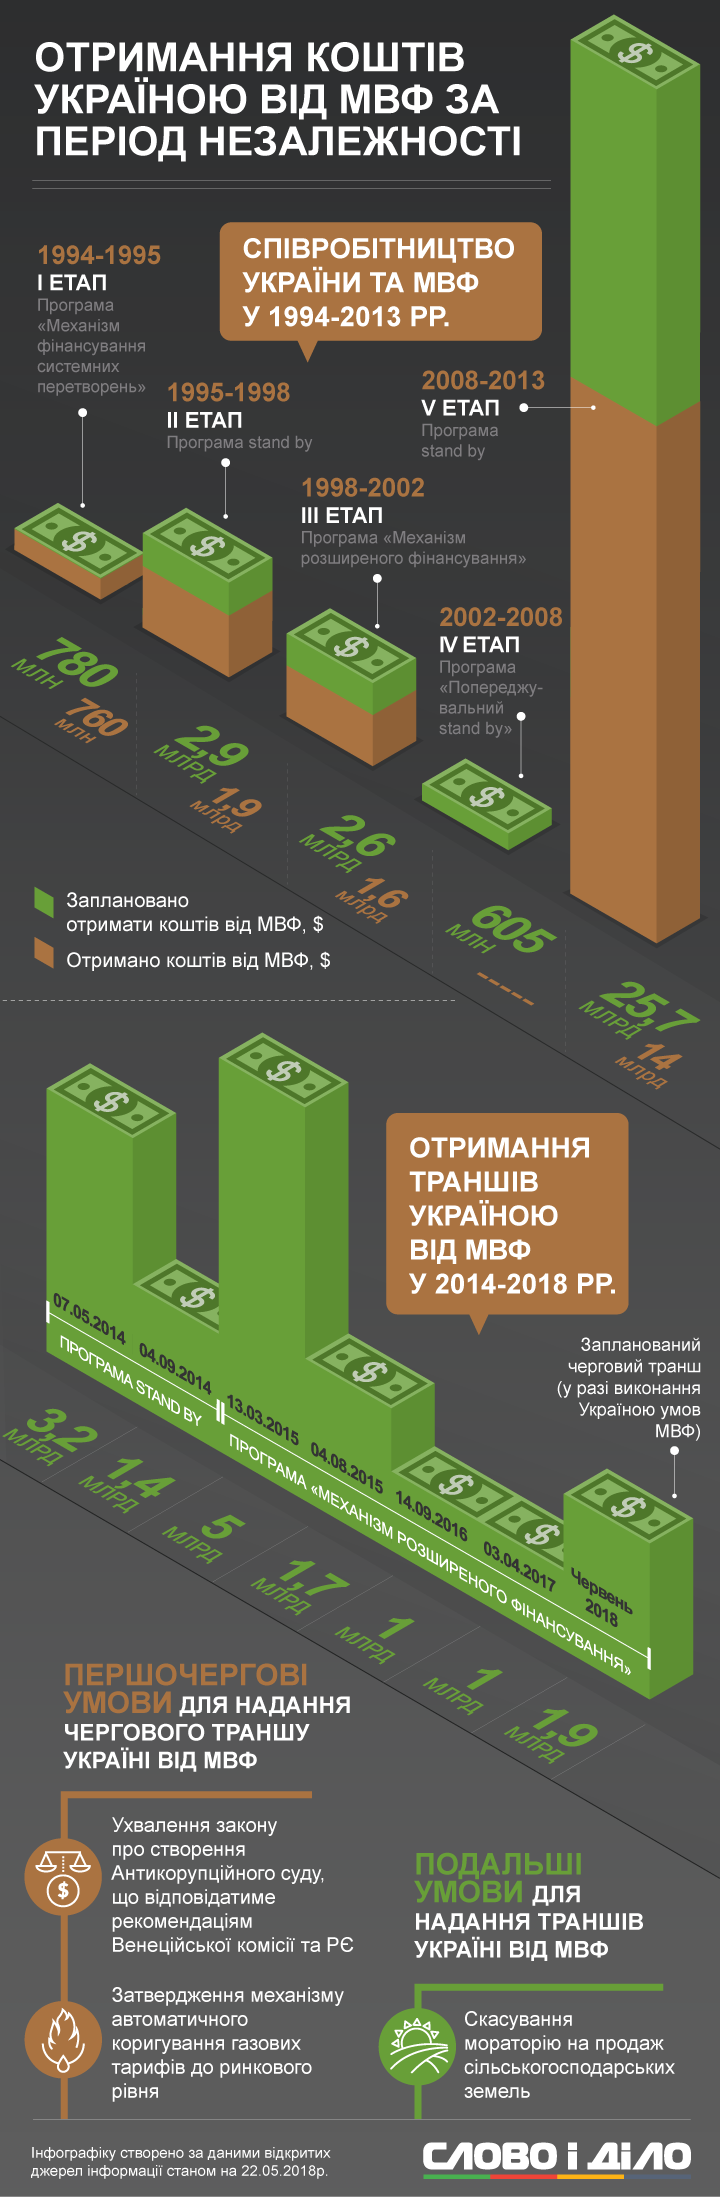 Україна почала співпрацювати з МВФ у 1994 році. Найбільше коштів було отримано в 2008-2013 роках.